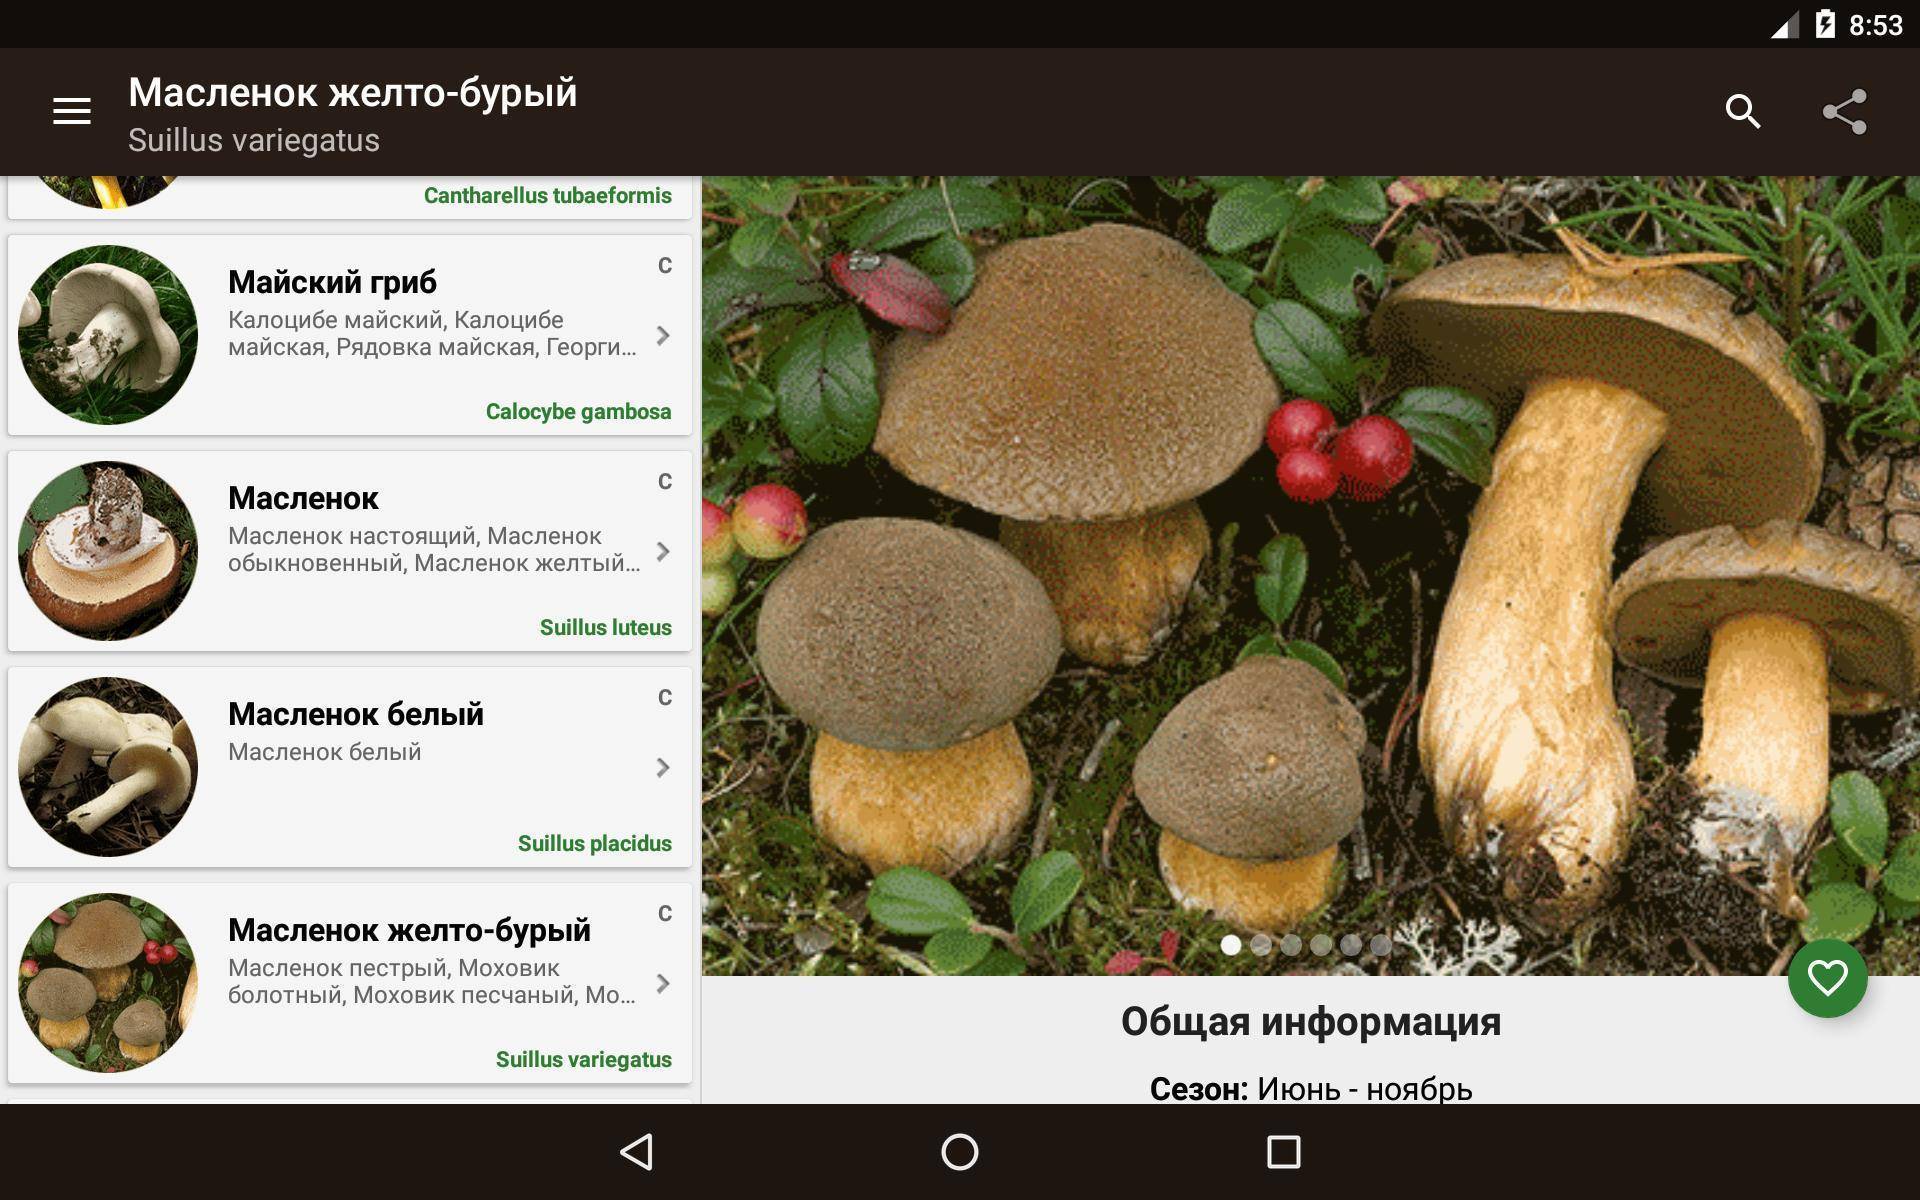 Салаты с грибами - энциклопедия грибов